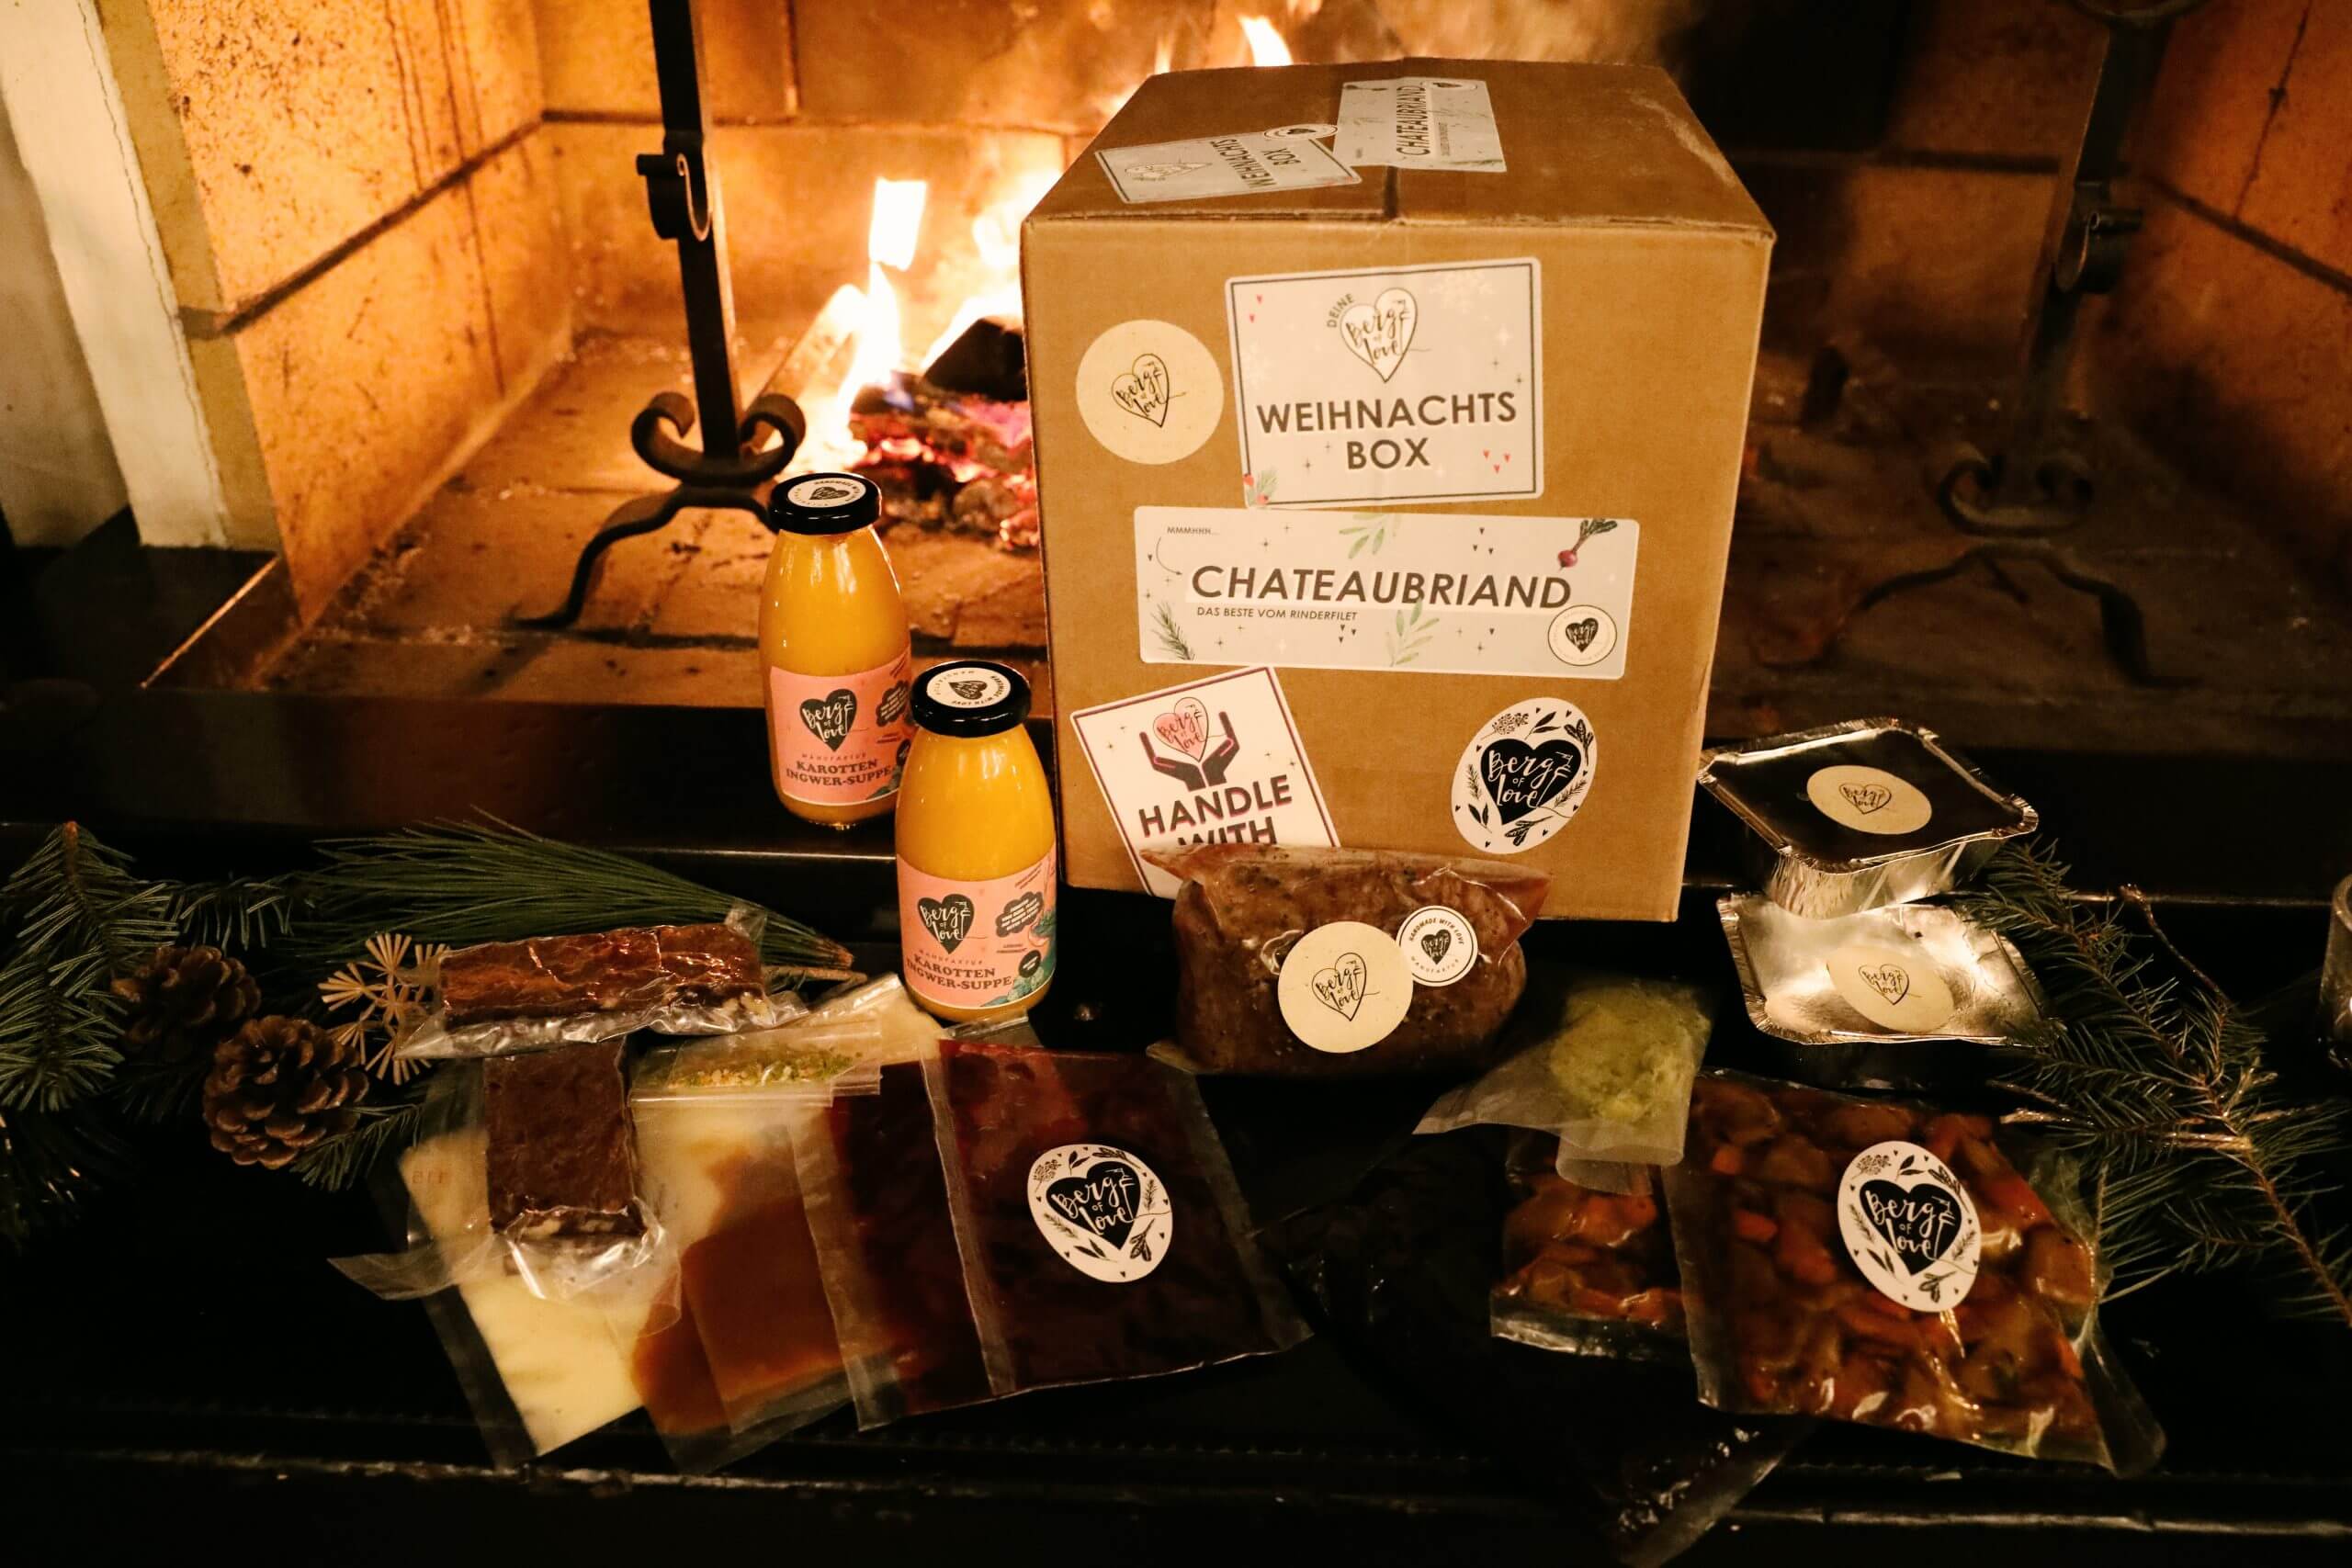 Weichnachtsbox Chateaubriand